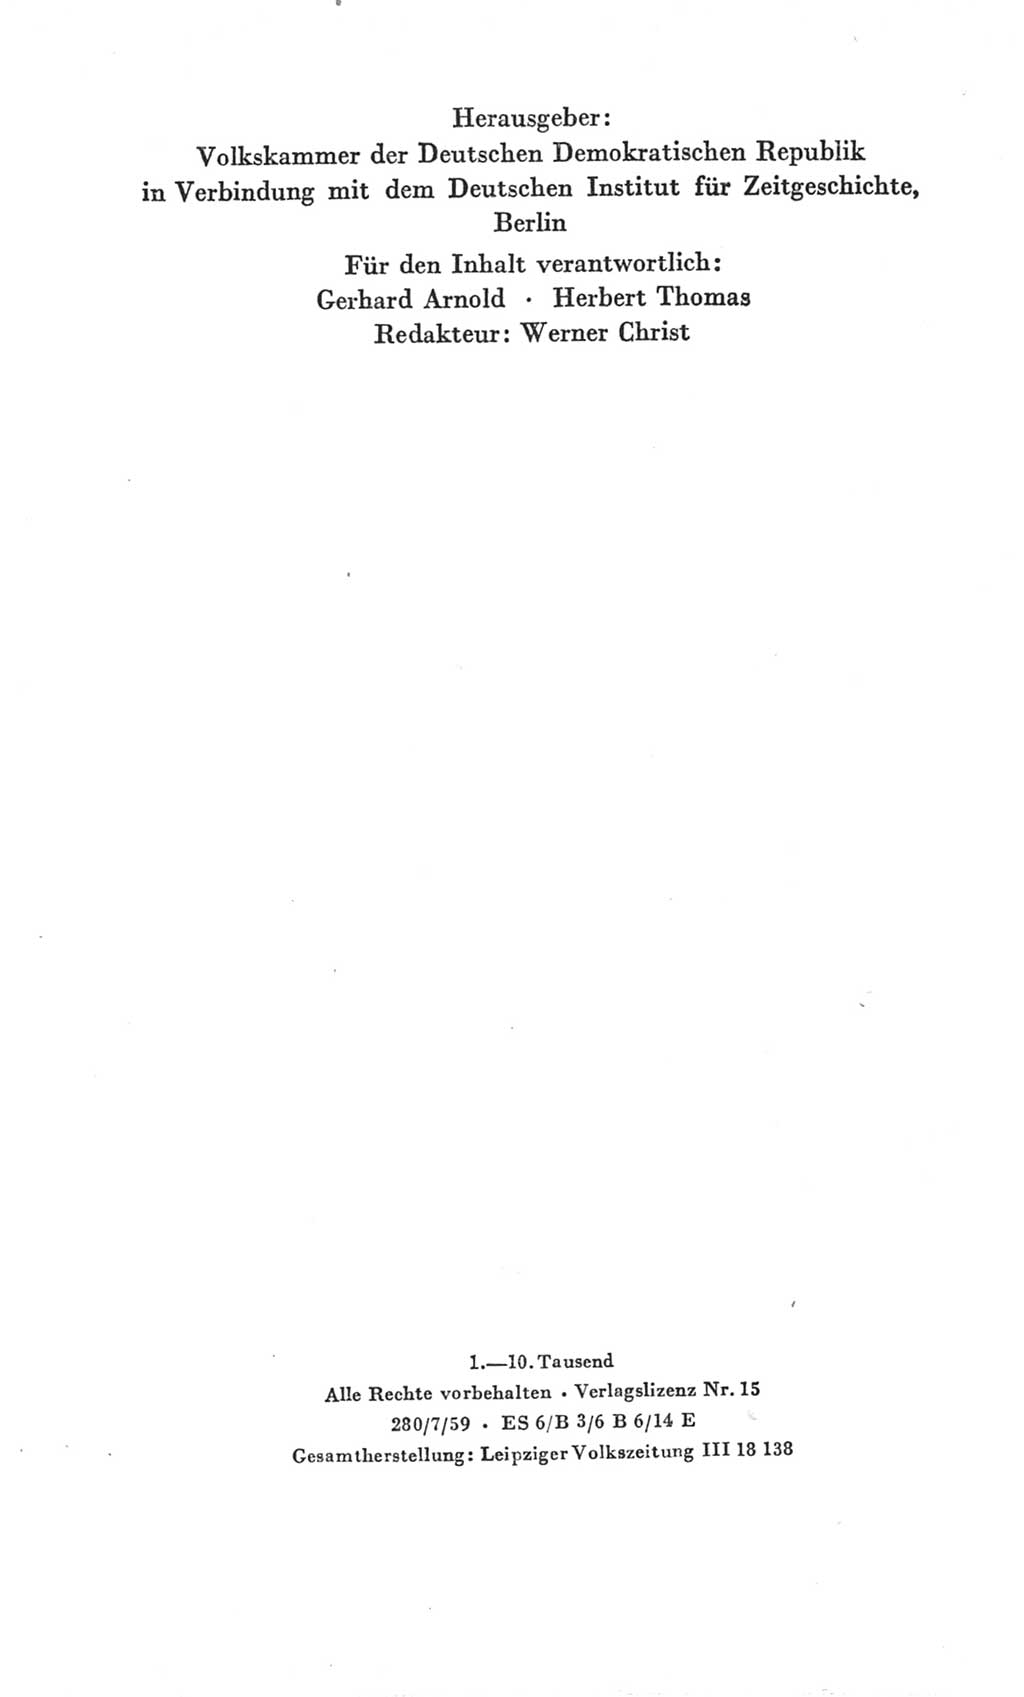 Handbuch der Volkskammer (VK) der Deutschen Demokratischen Republik (DDR), 3. Wahlperiode 1958-1963, Seite 4 (Hdb. VK. DDR 3. WP. 1958-1963, S. 4)